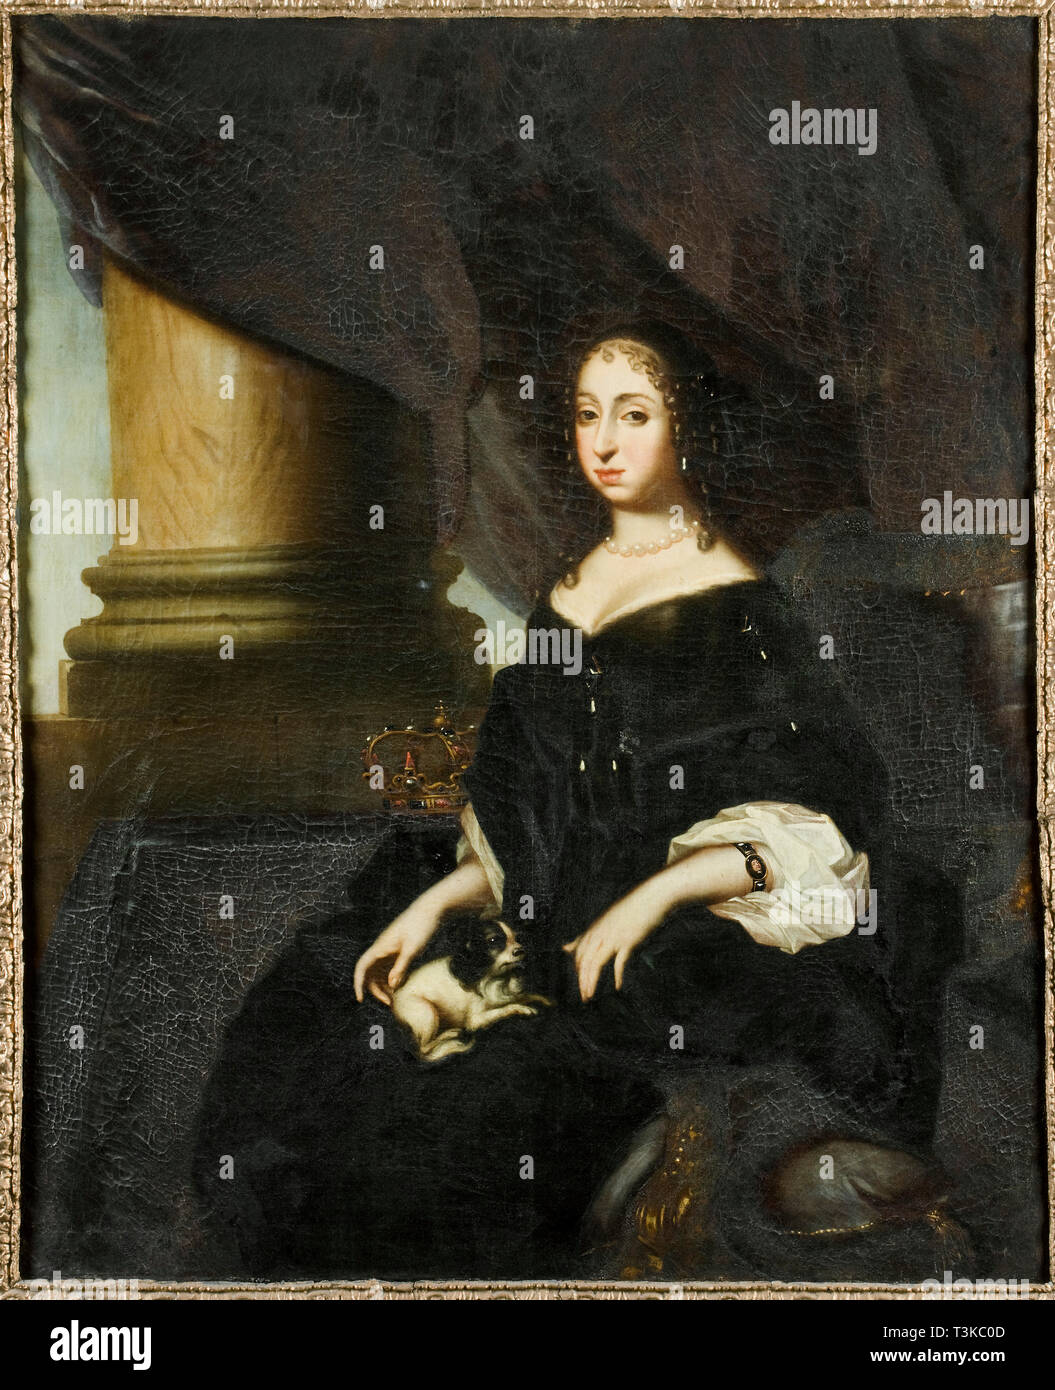 Portrait of Hedvig Eleonora of Holstein-Gottorp (1636-1715), Queen of Sweden, c. 1670. Creator: Ehrenstrahl, David Klöcker (1629-1698). Stock Photo